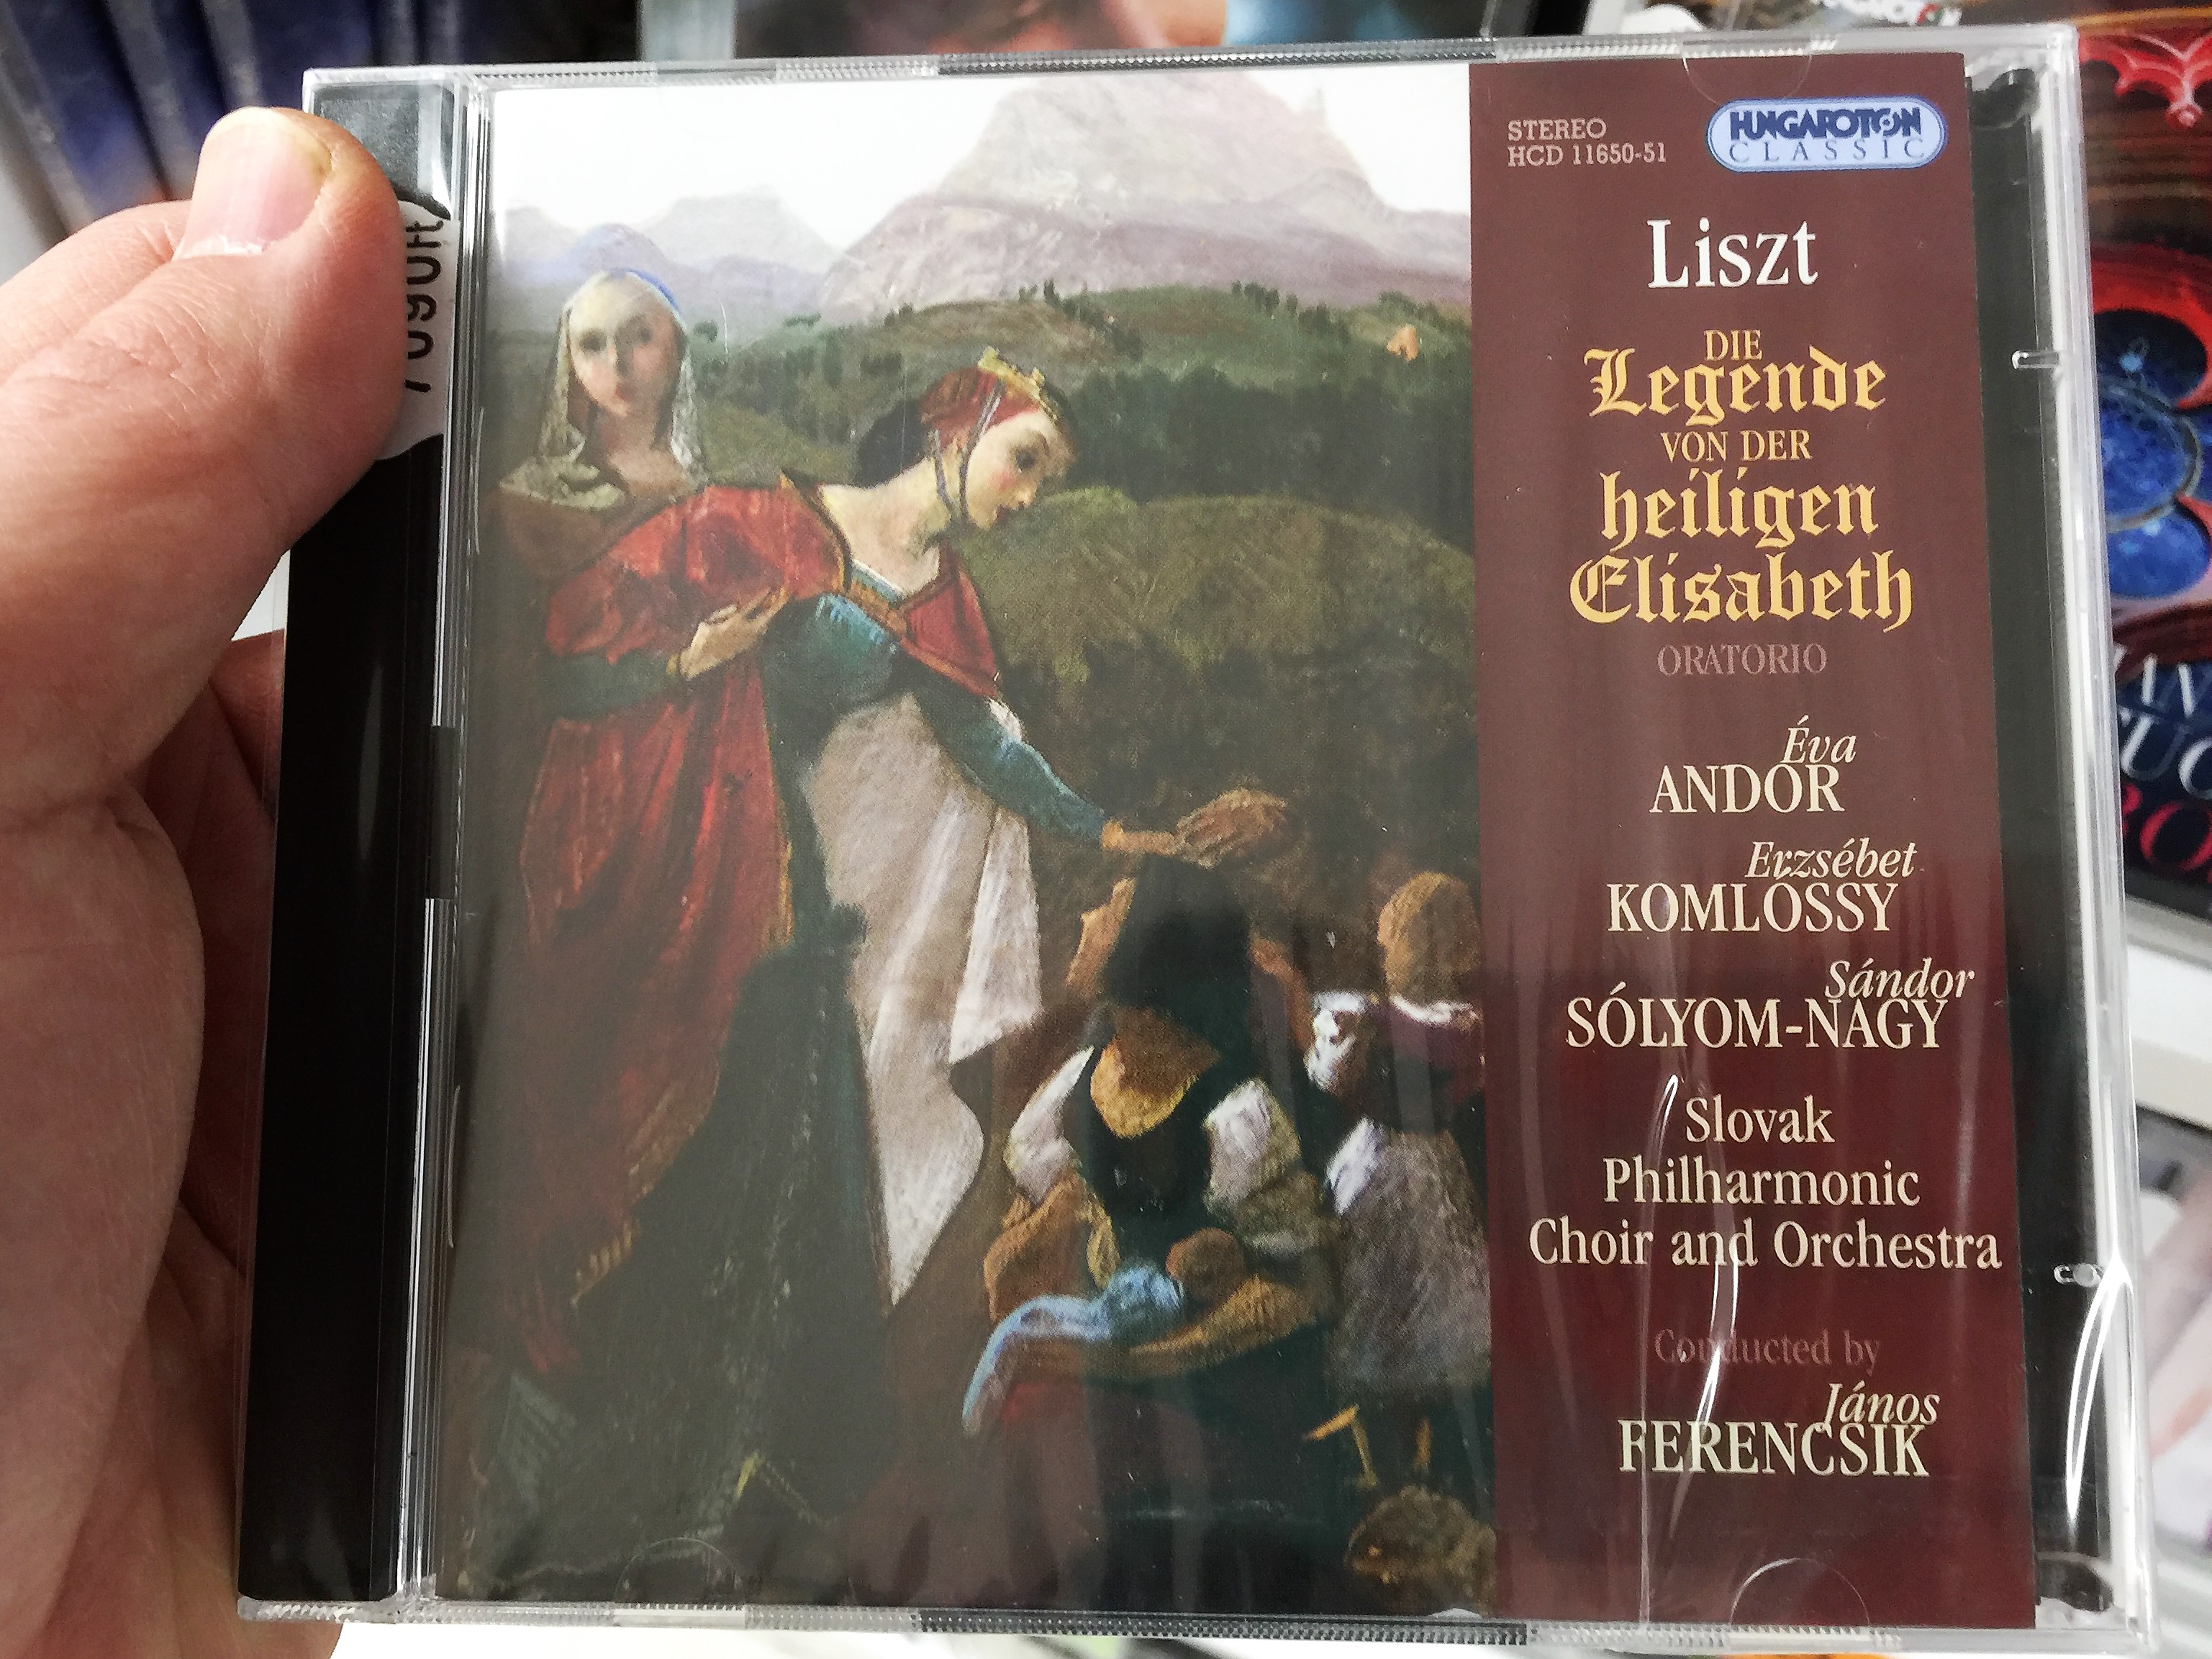 die-legende-von-der-heiligen-elisabeth-liszt-ferenc-audio-cd-2007-the-legend-of-saint-elizabeth-oratorium-hungaroton-hcd-11650-51-1-.jpg